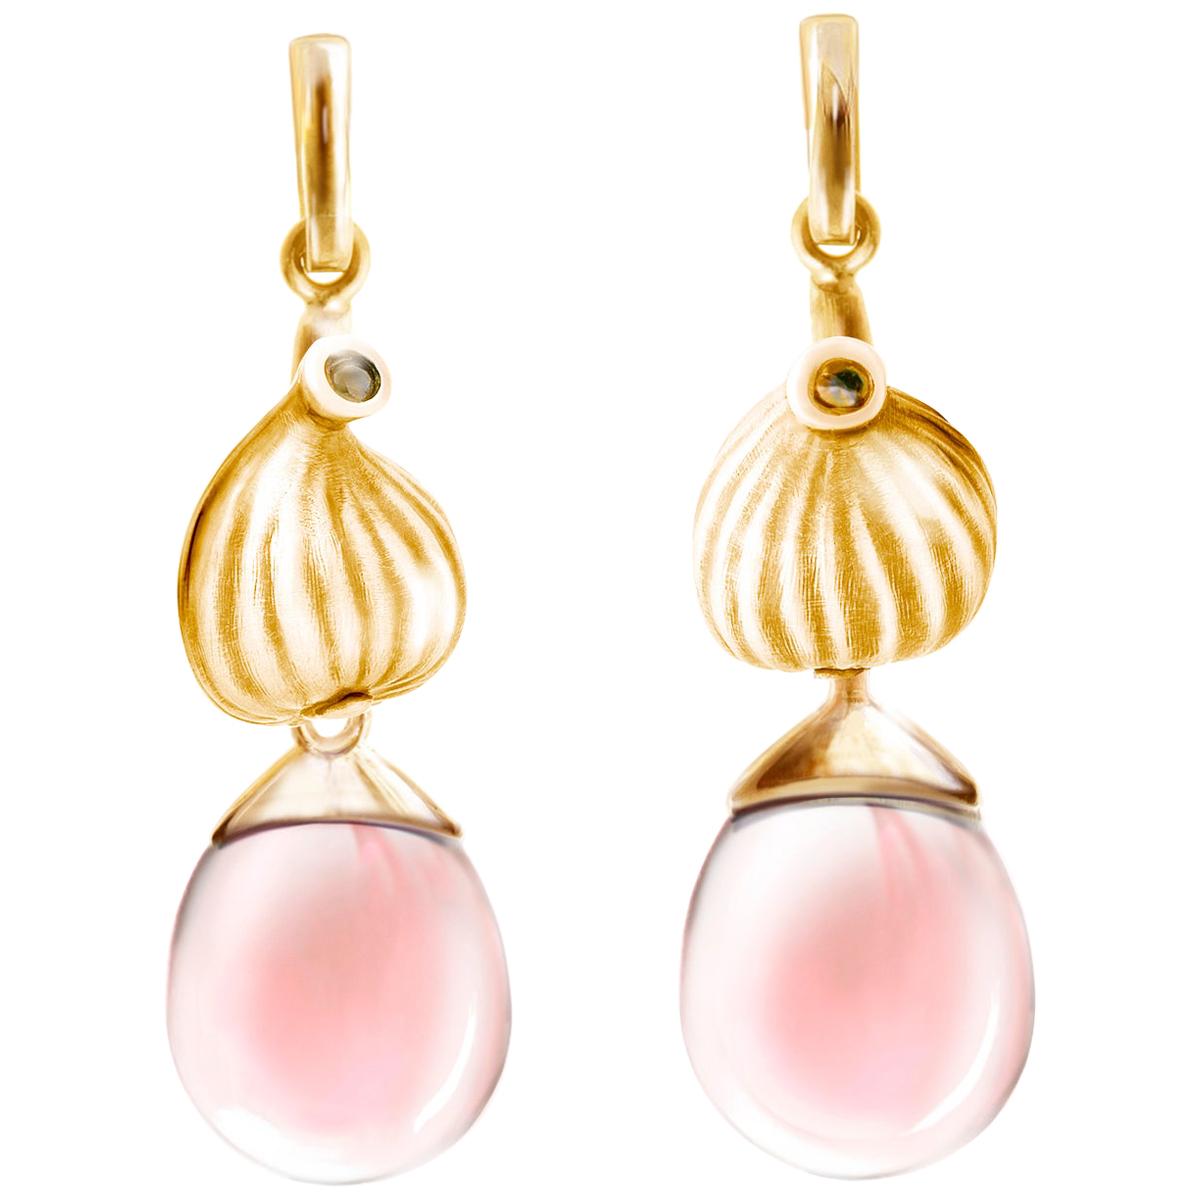 Boucles d'oreilles cocktail figue en or rose quatorze carats avec quartzes roses